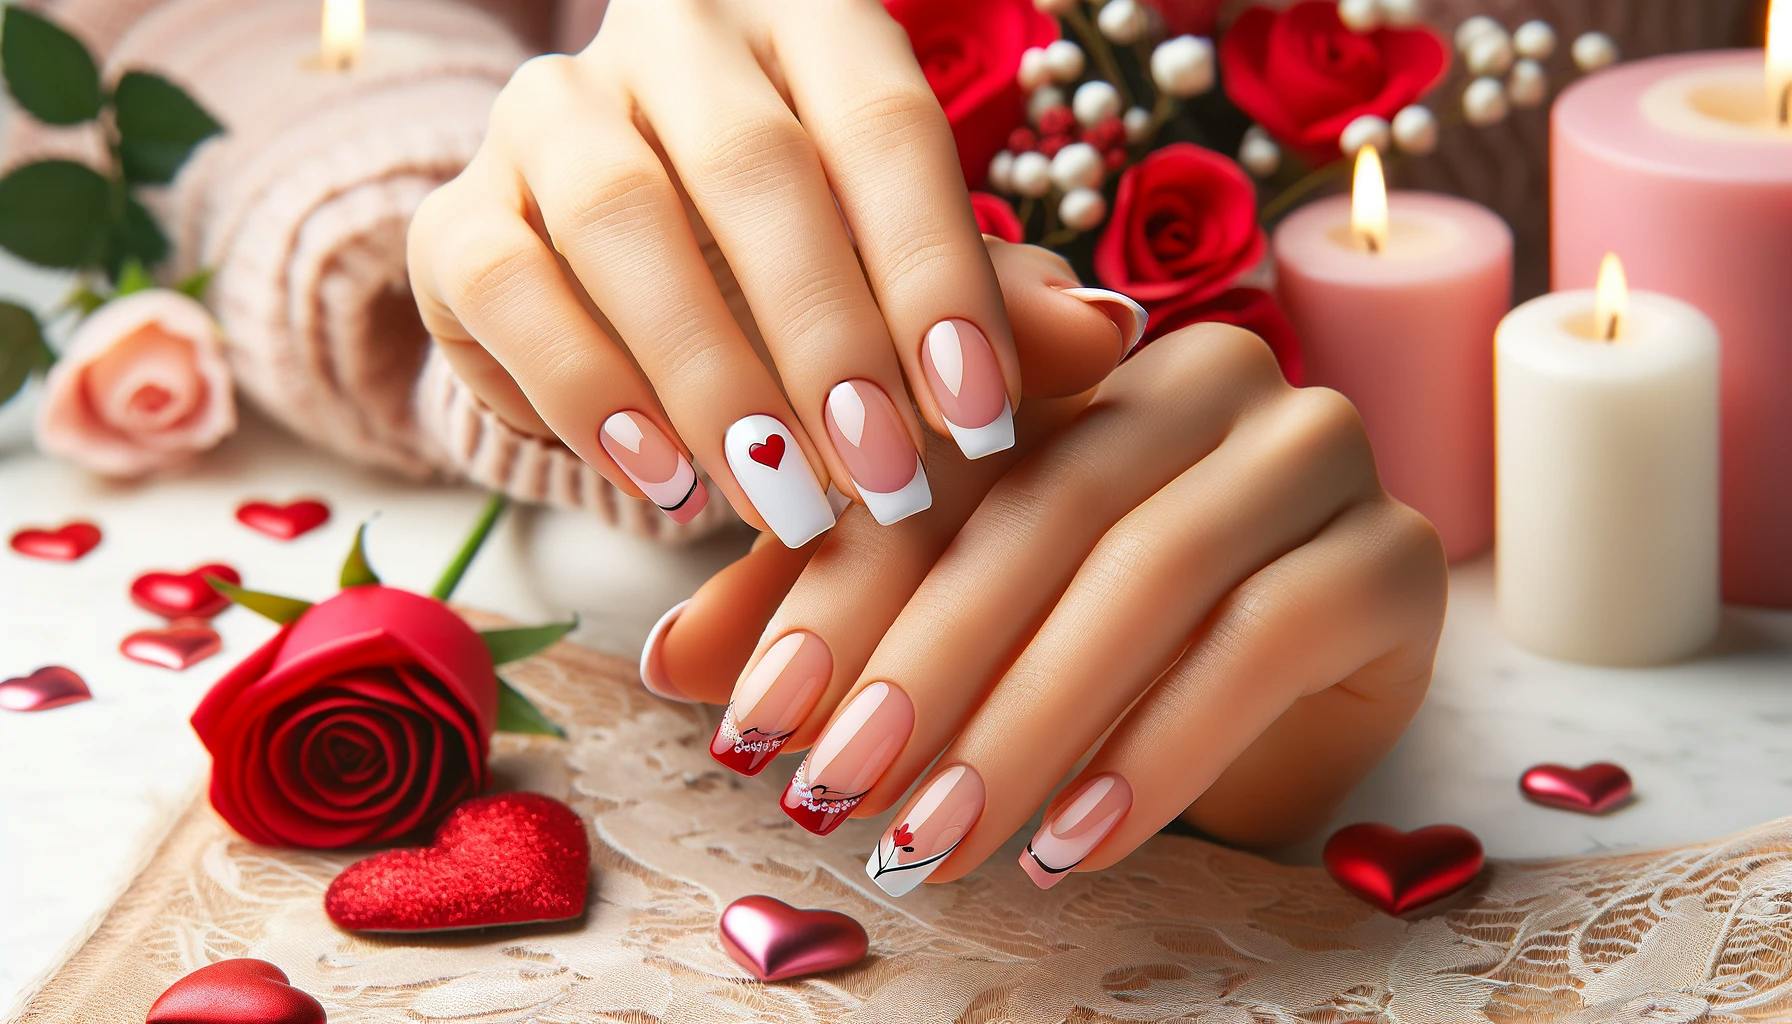 Francuski manicure z walentynkowym motywem na rok 2024, biale paznokcie z czerwonymi sercami, otoczone romantyczna atmosfera swiec i roz